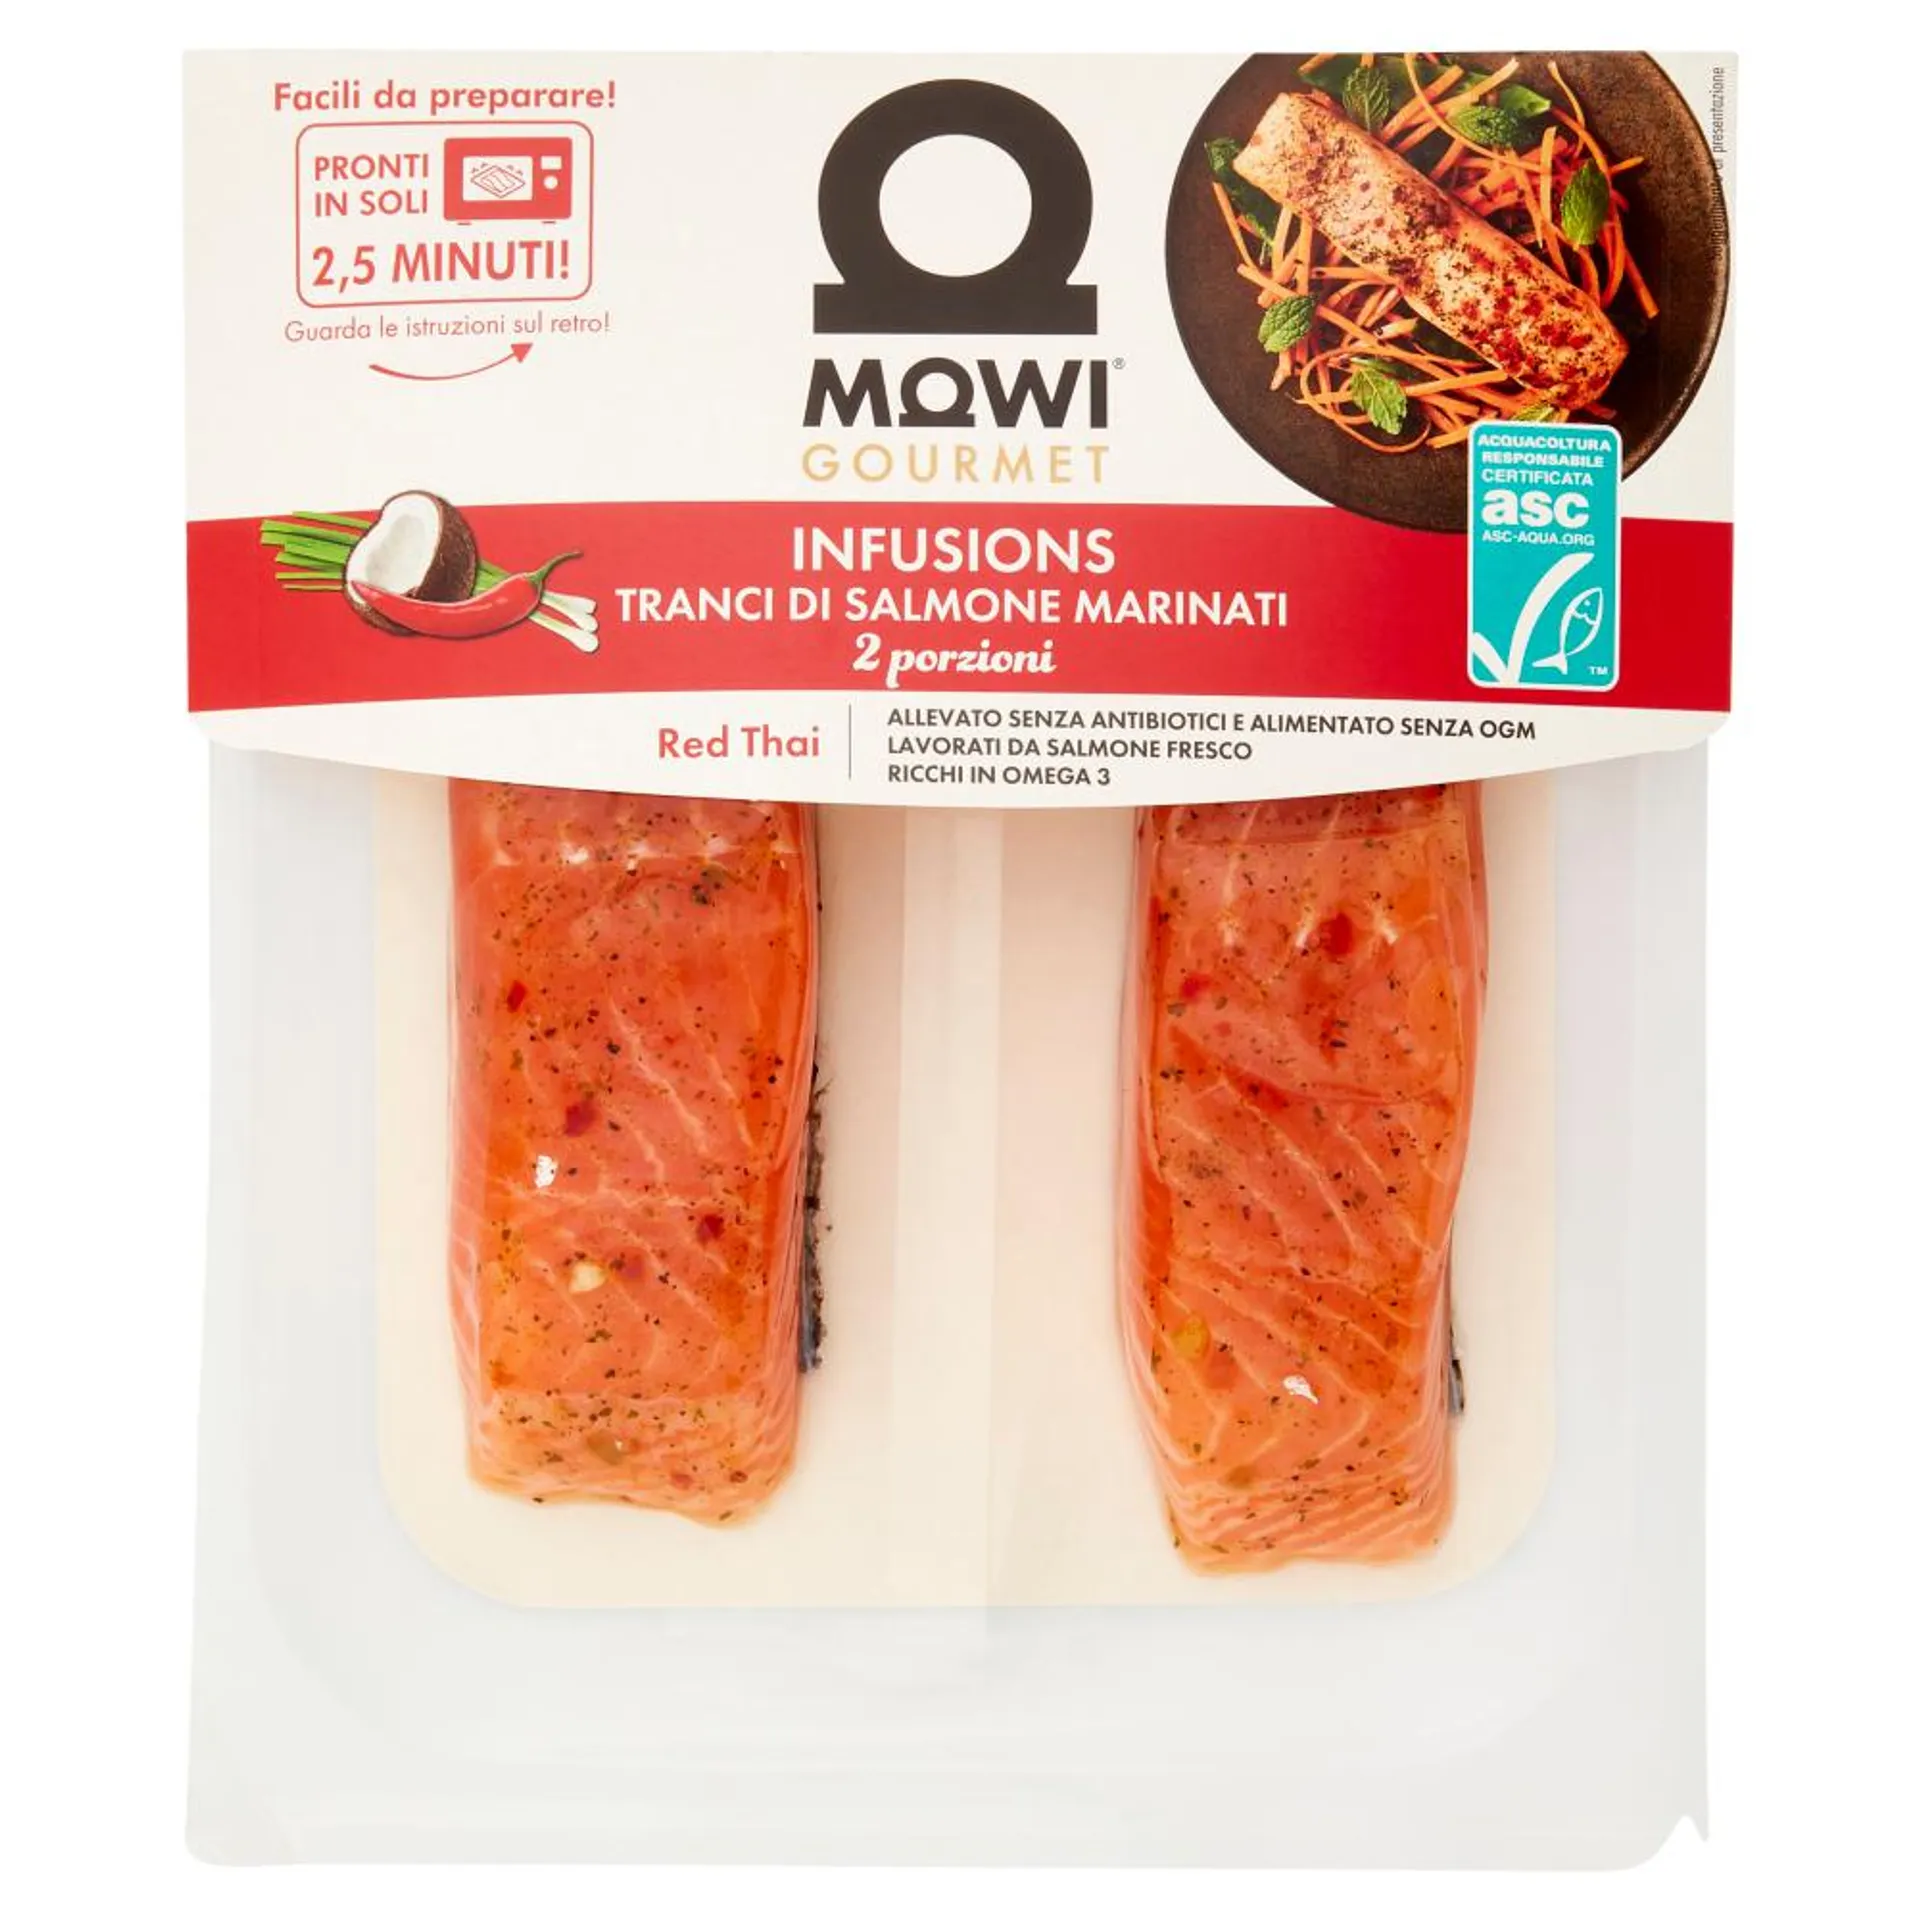 Mowi Gourmet Infusions Tranci di Salmone Marinati Red Thai 2 x 110 g